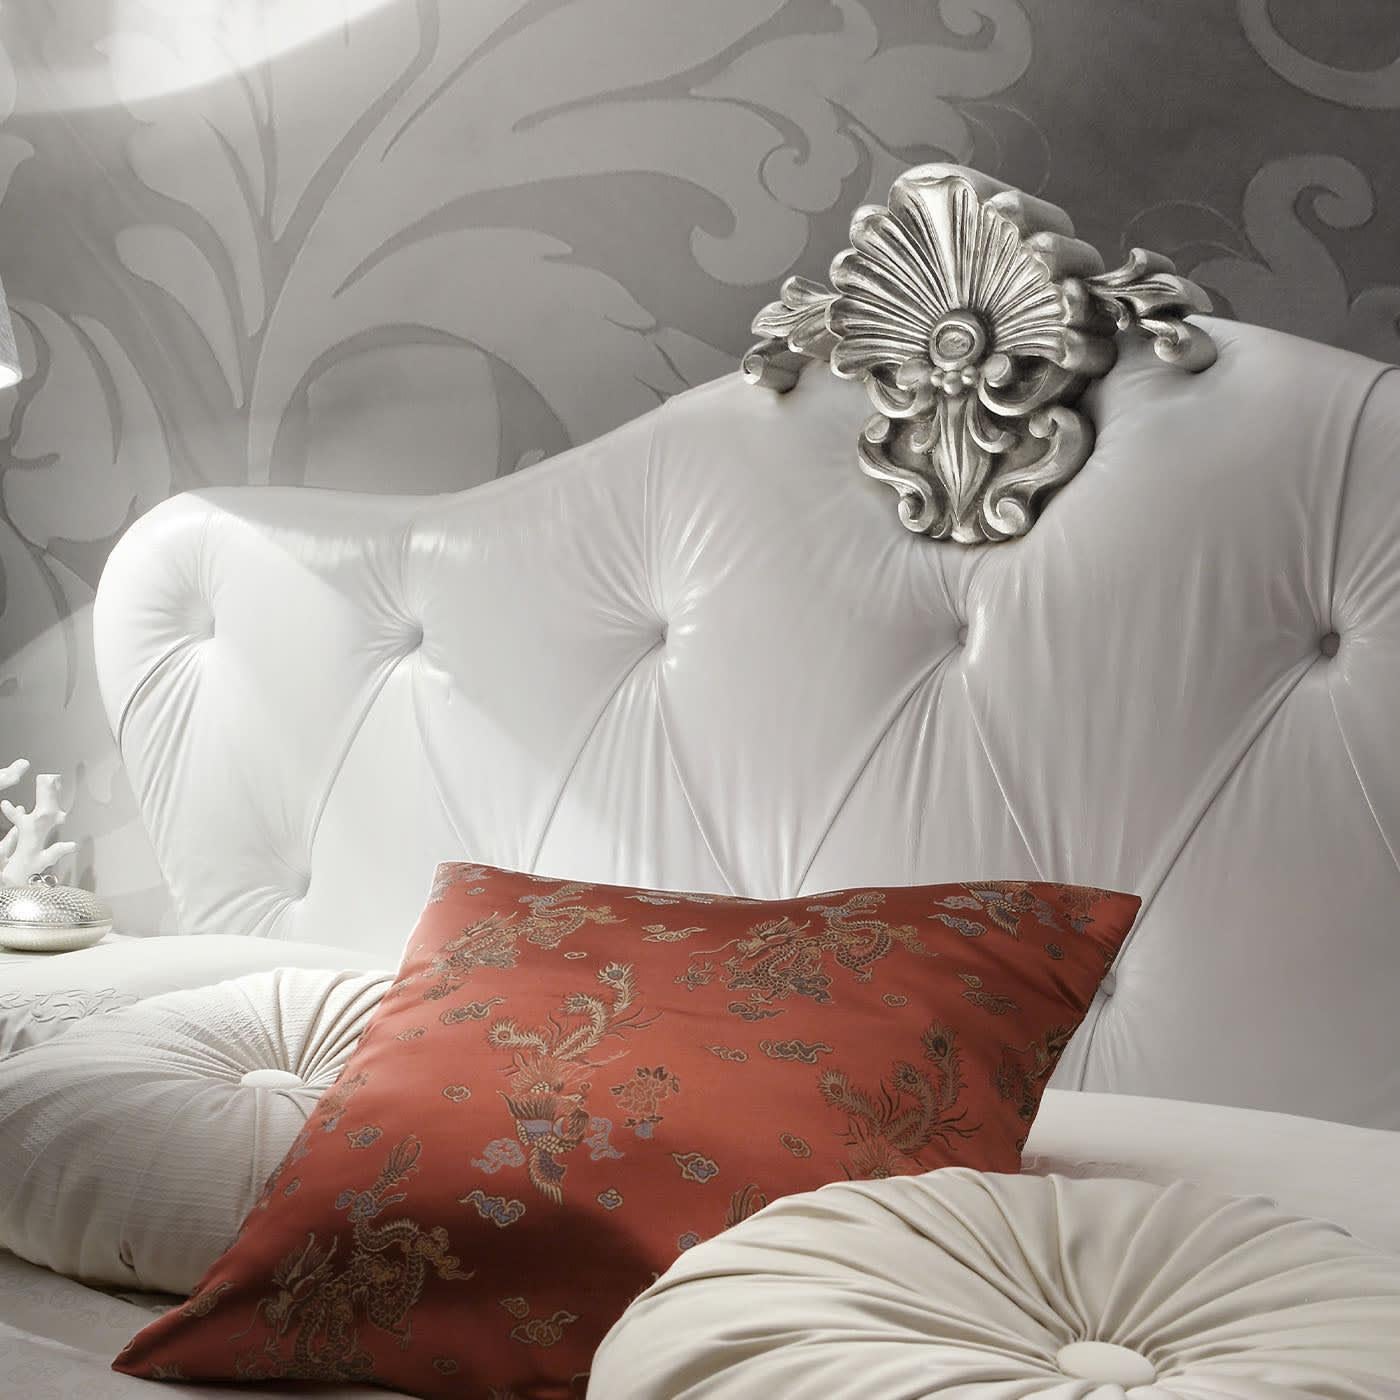 Découvrez ce lit baroque et élégant avec une tête de lit sculptée et un cuir capitonné avec touffes de boutons par Ros Italia Interiors. Le filet du lit n'est pas inclus. Veuillez contacter le service de conciergerie pour de plus amples